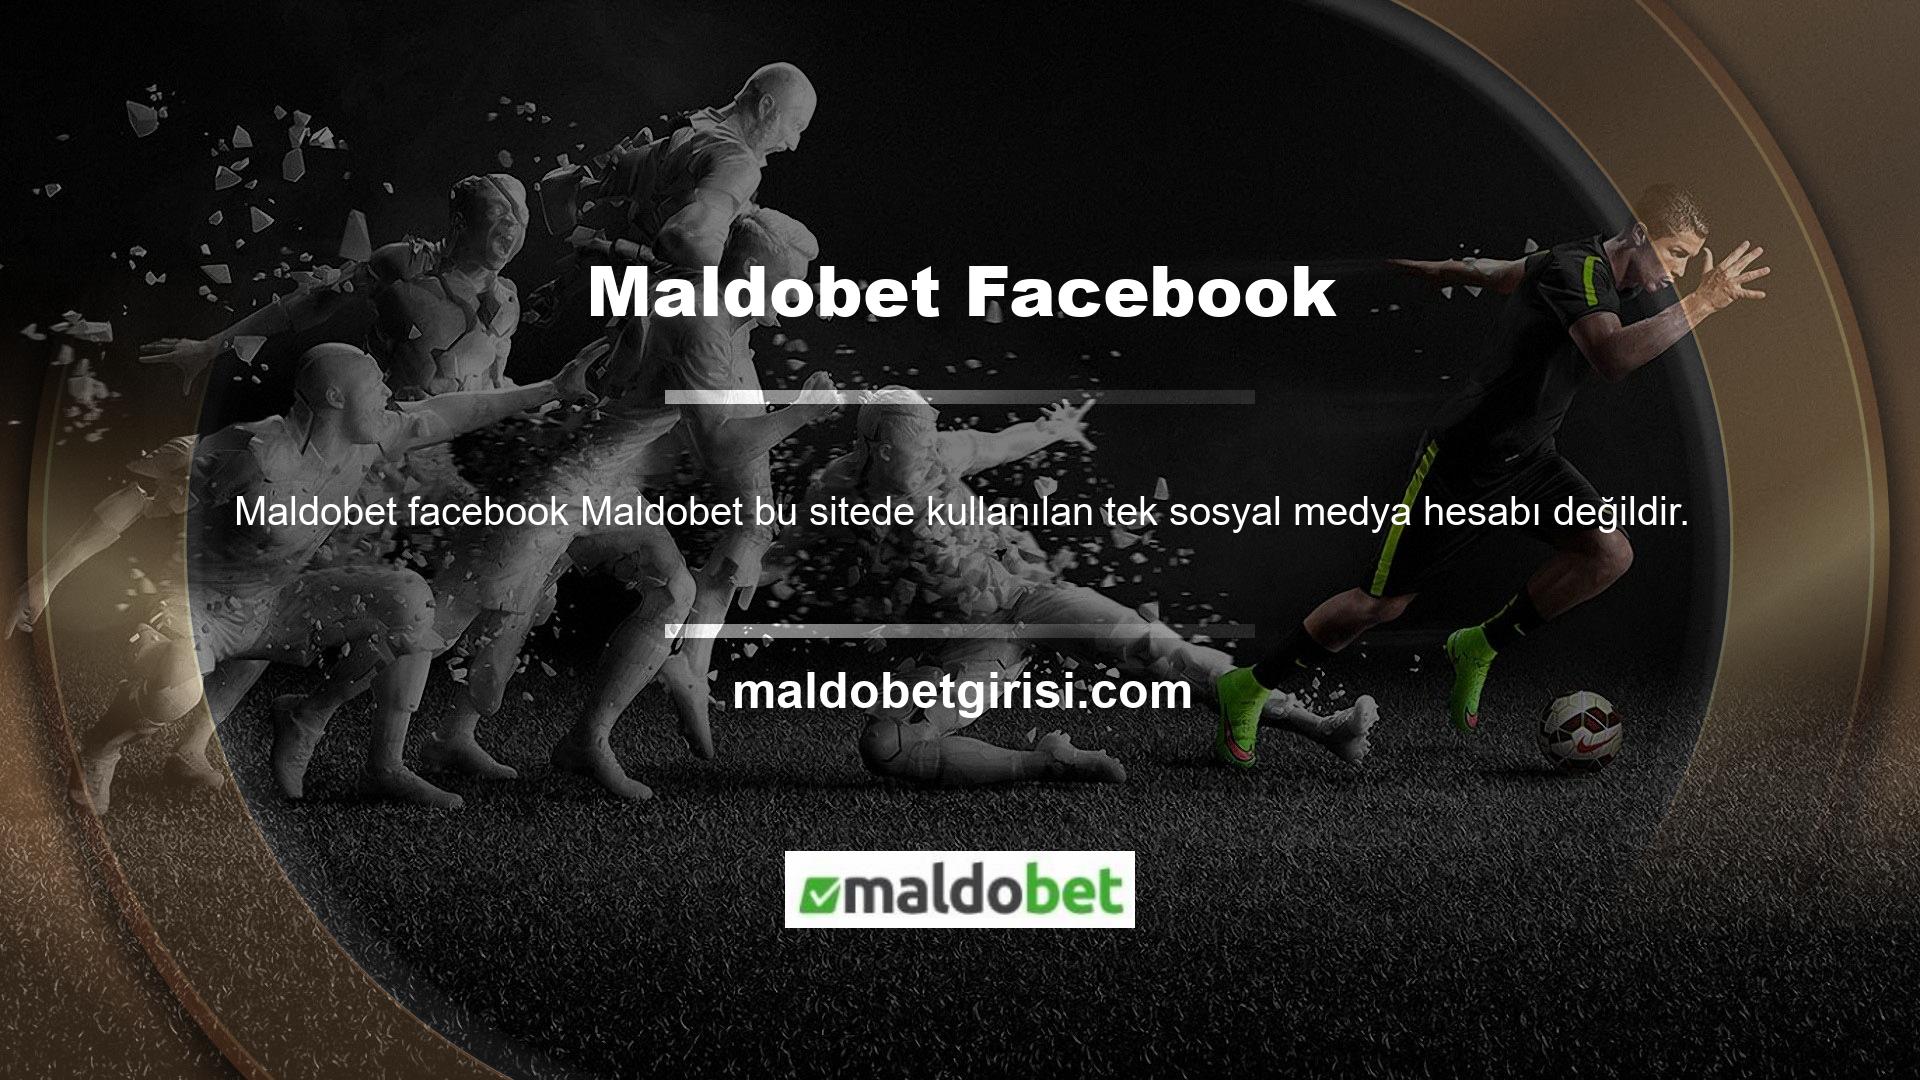 Yukarıda bahsedildiği gibi Maldobet Facebook hesabı da mevcuttur